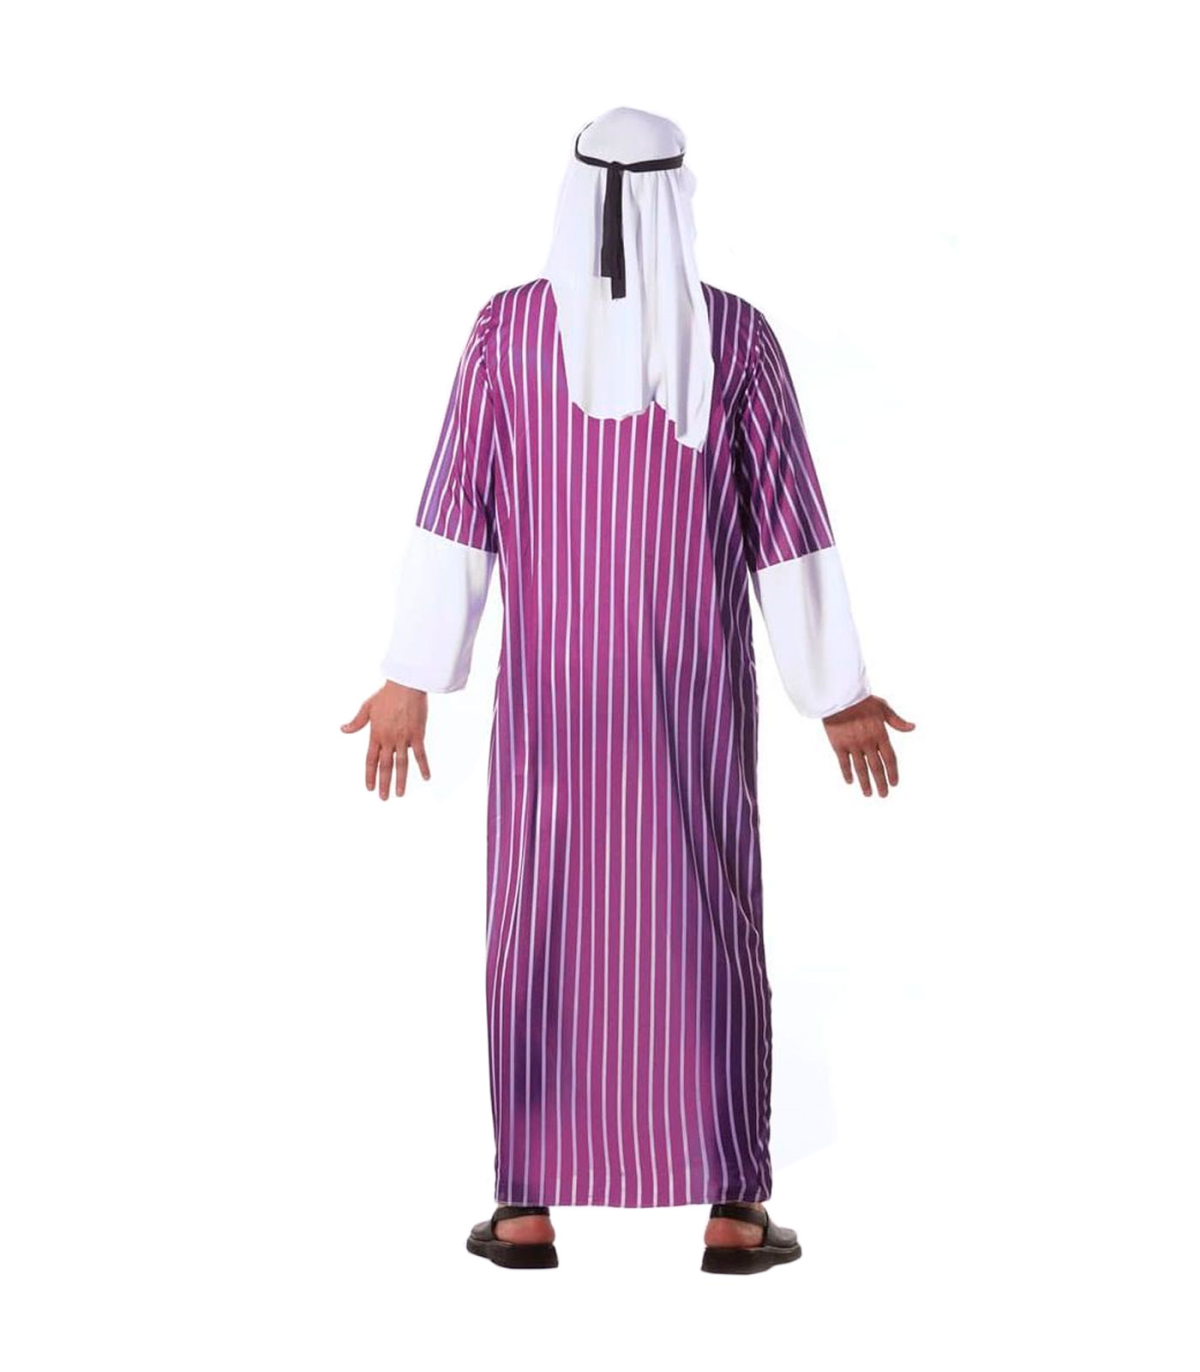 Tradineur - Disfraz de jeque árabe para adulto, 100% poliéster, incluye  tocado y túnica, atuendo de carnaval, Halloween, cosplay